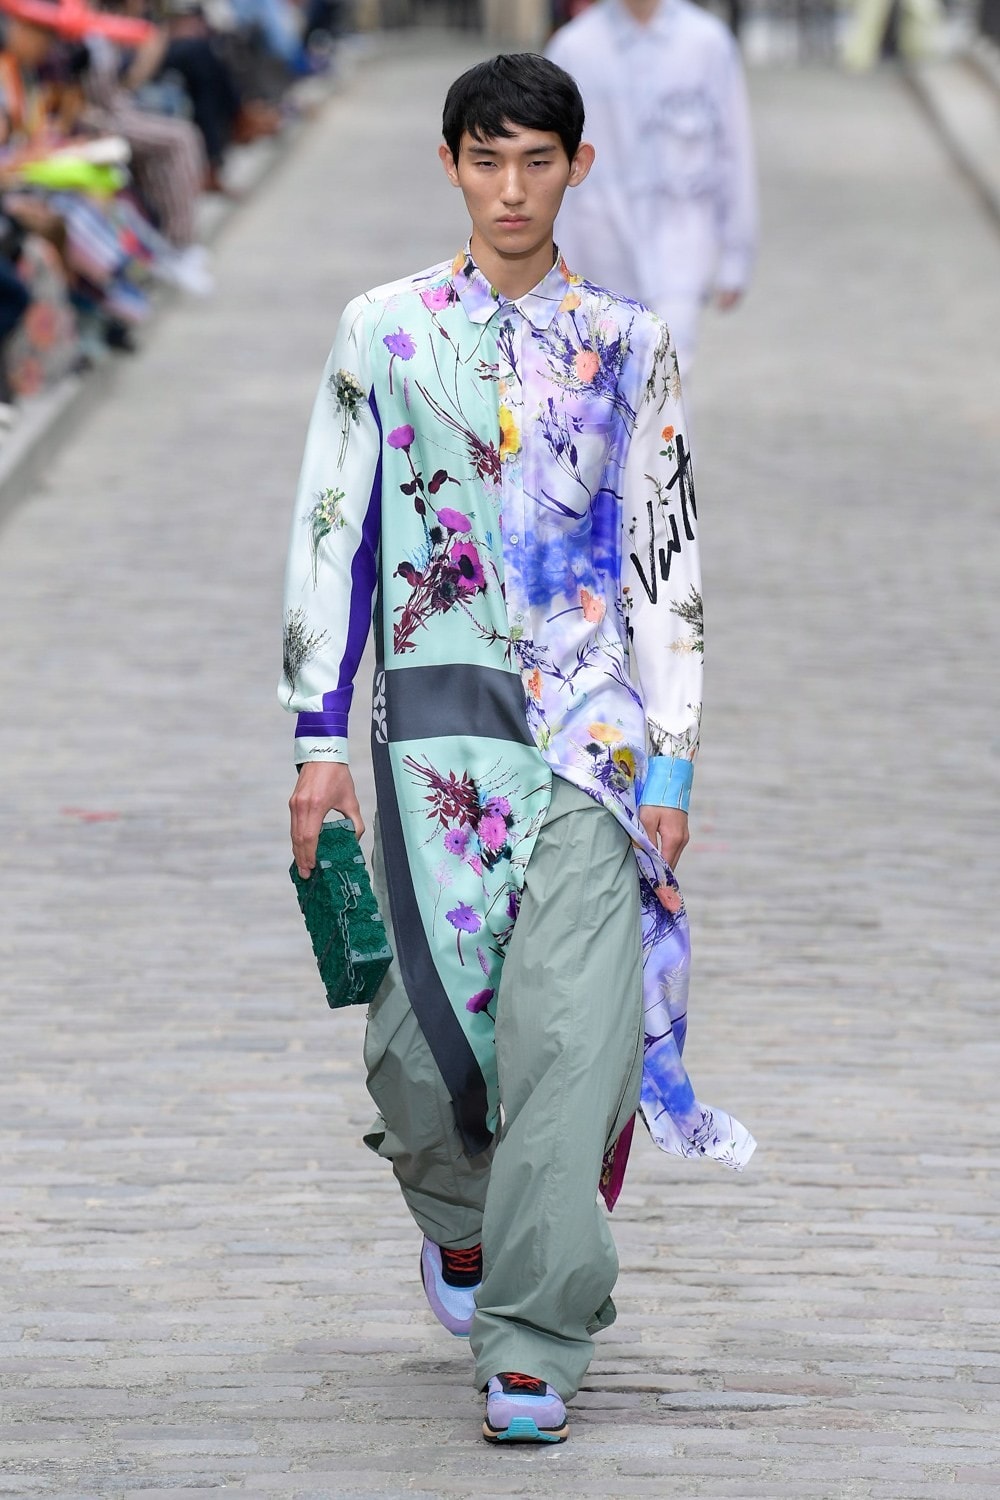 Louis Vuitton Virgil Abloh Spring Summer 2020 Paris Fashion Week Men's Show Collection Jacket Pants Purple Blue